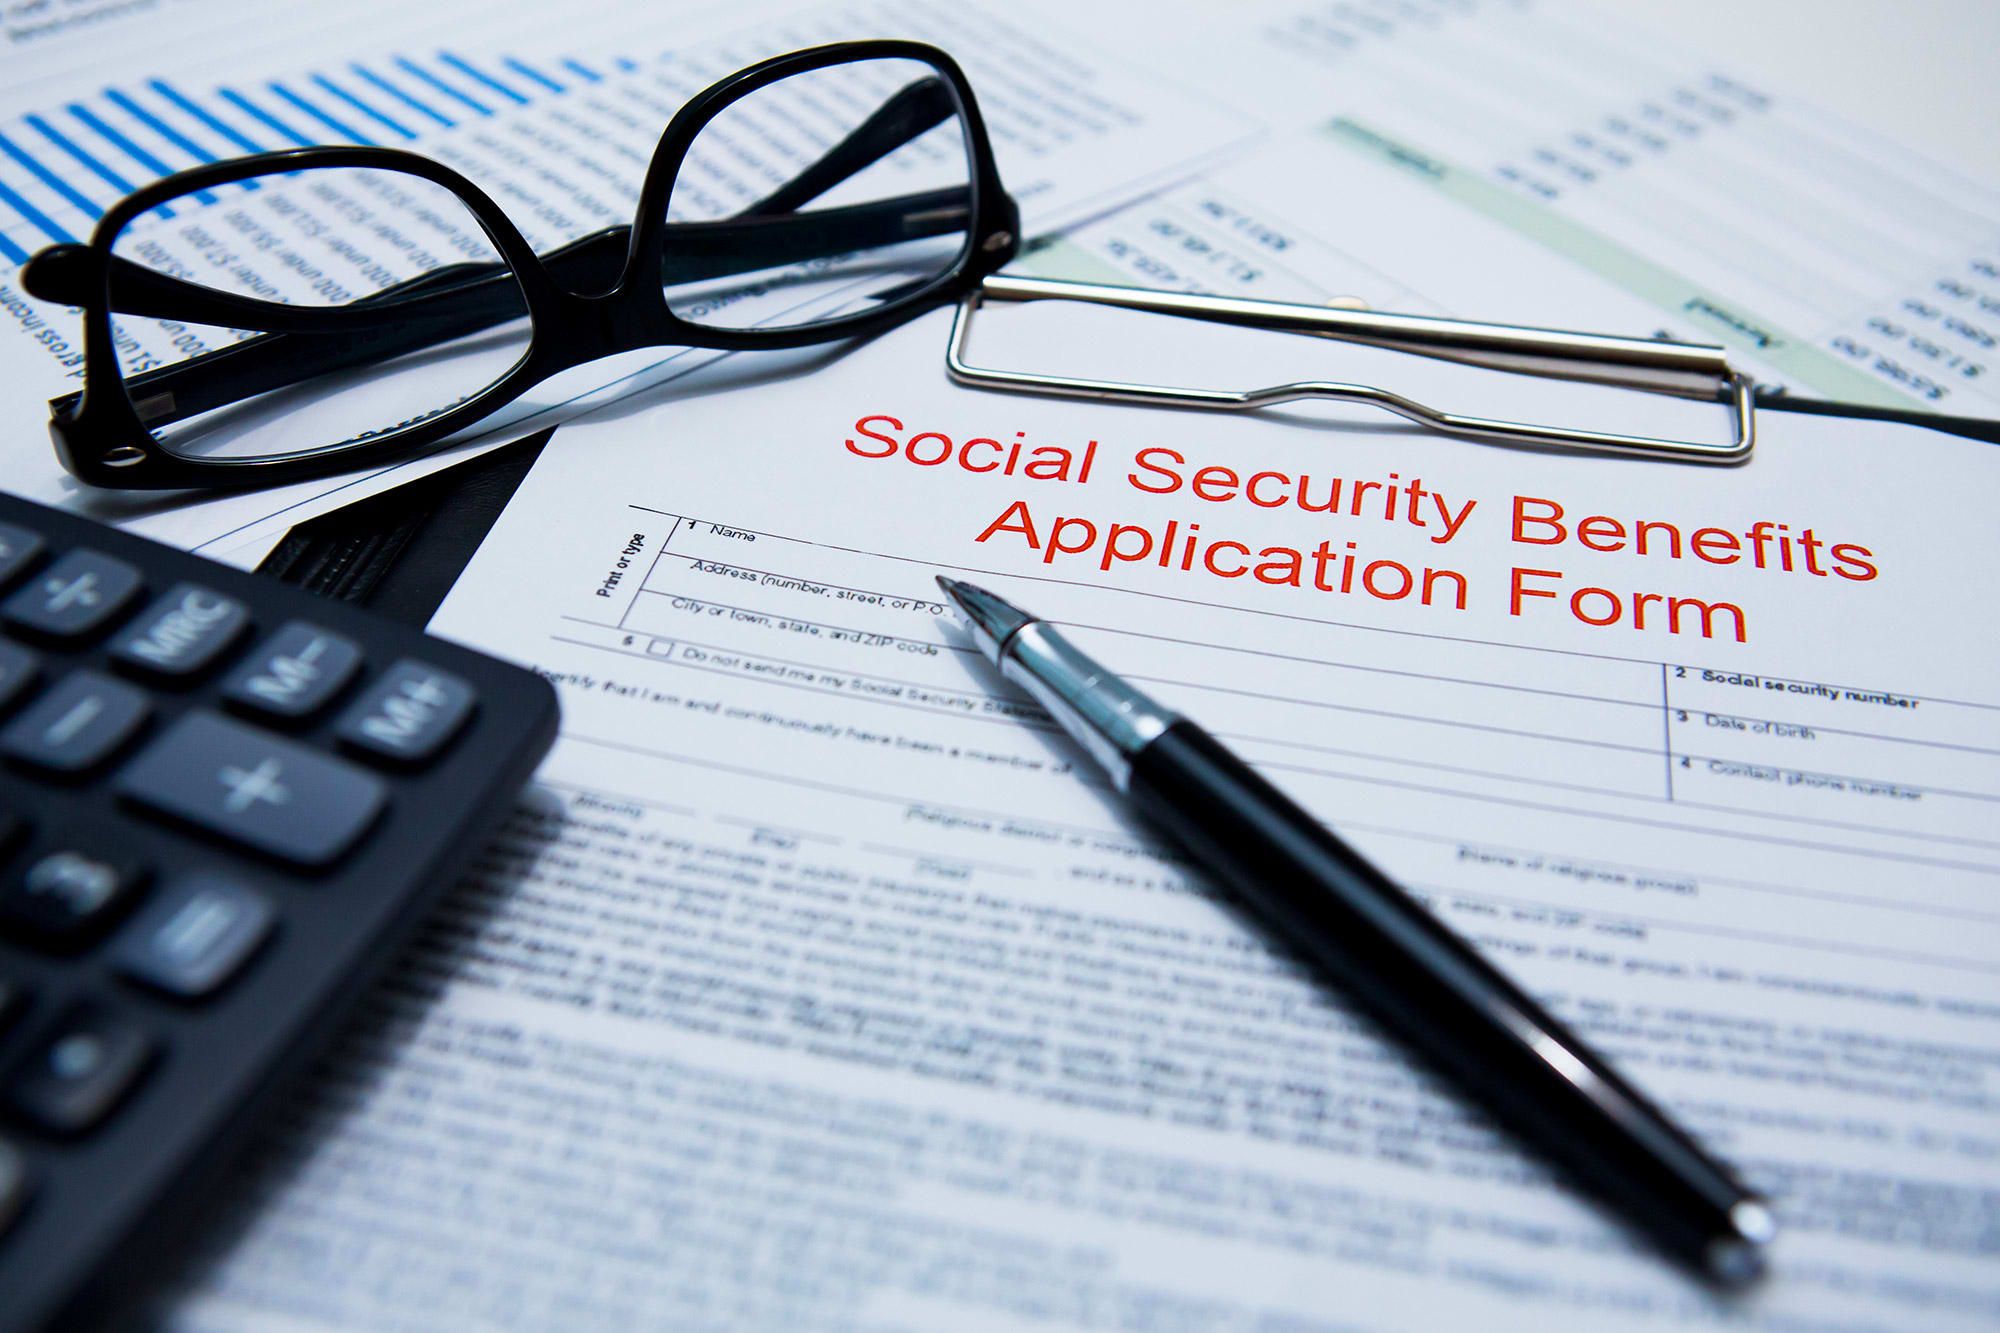 Seguridad Social hoy y mañana: ¿Puedo negarme a dar mi número de Seguro Social a una empresa privada?